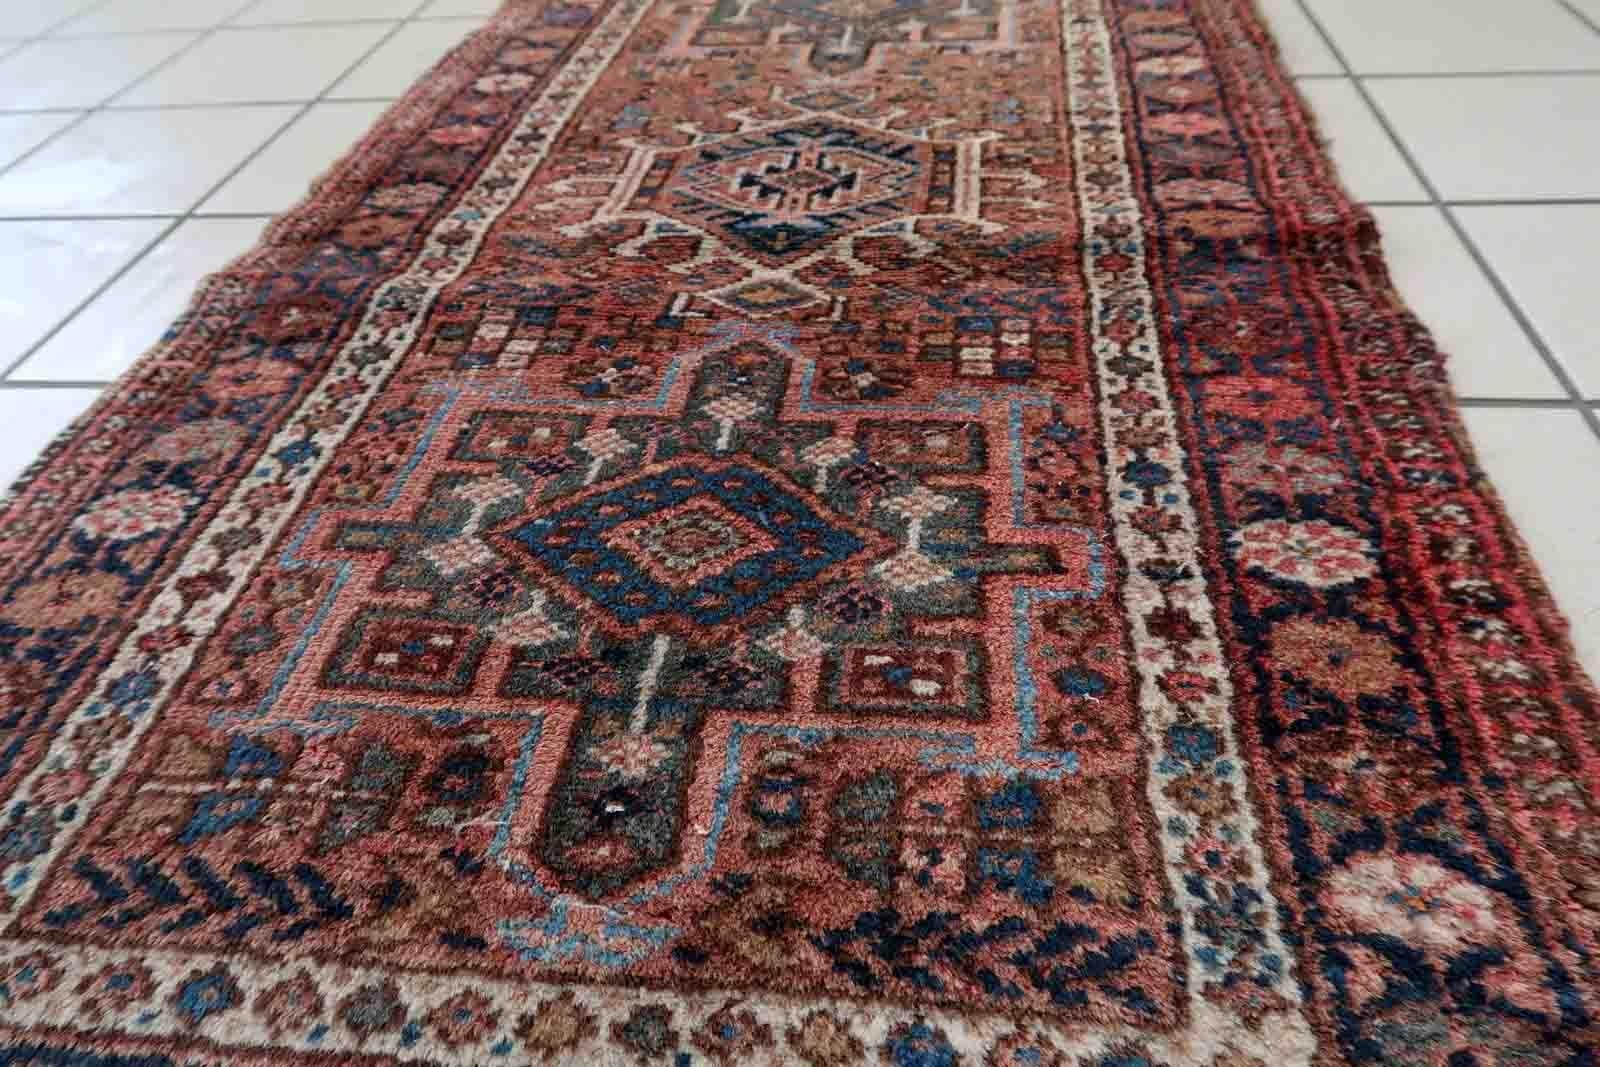 Handgefertigter Vintage-Karajeh-Teppich mit traditionellem Dreifach-Medaillon-Muster. Der Teppich hat eine hellrote Farbe. Sie stammt aus dem Ende des 20. Jahrhunderts und ist in gutem Originalzustand.

-zustand: original gut,

-etwa: 1970er